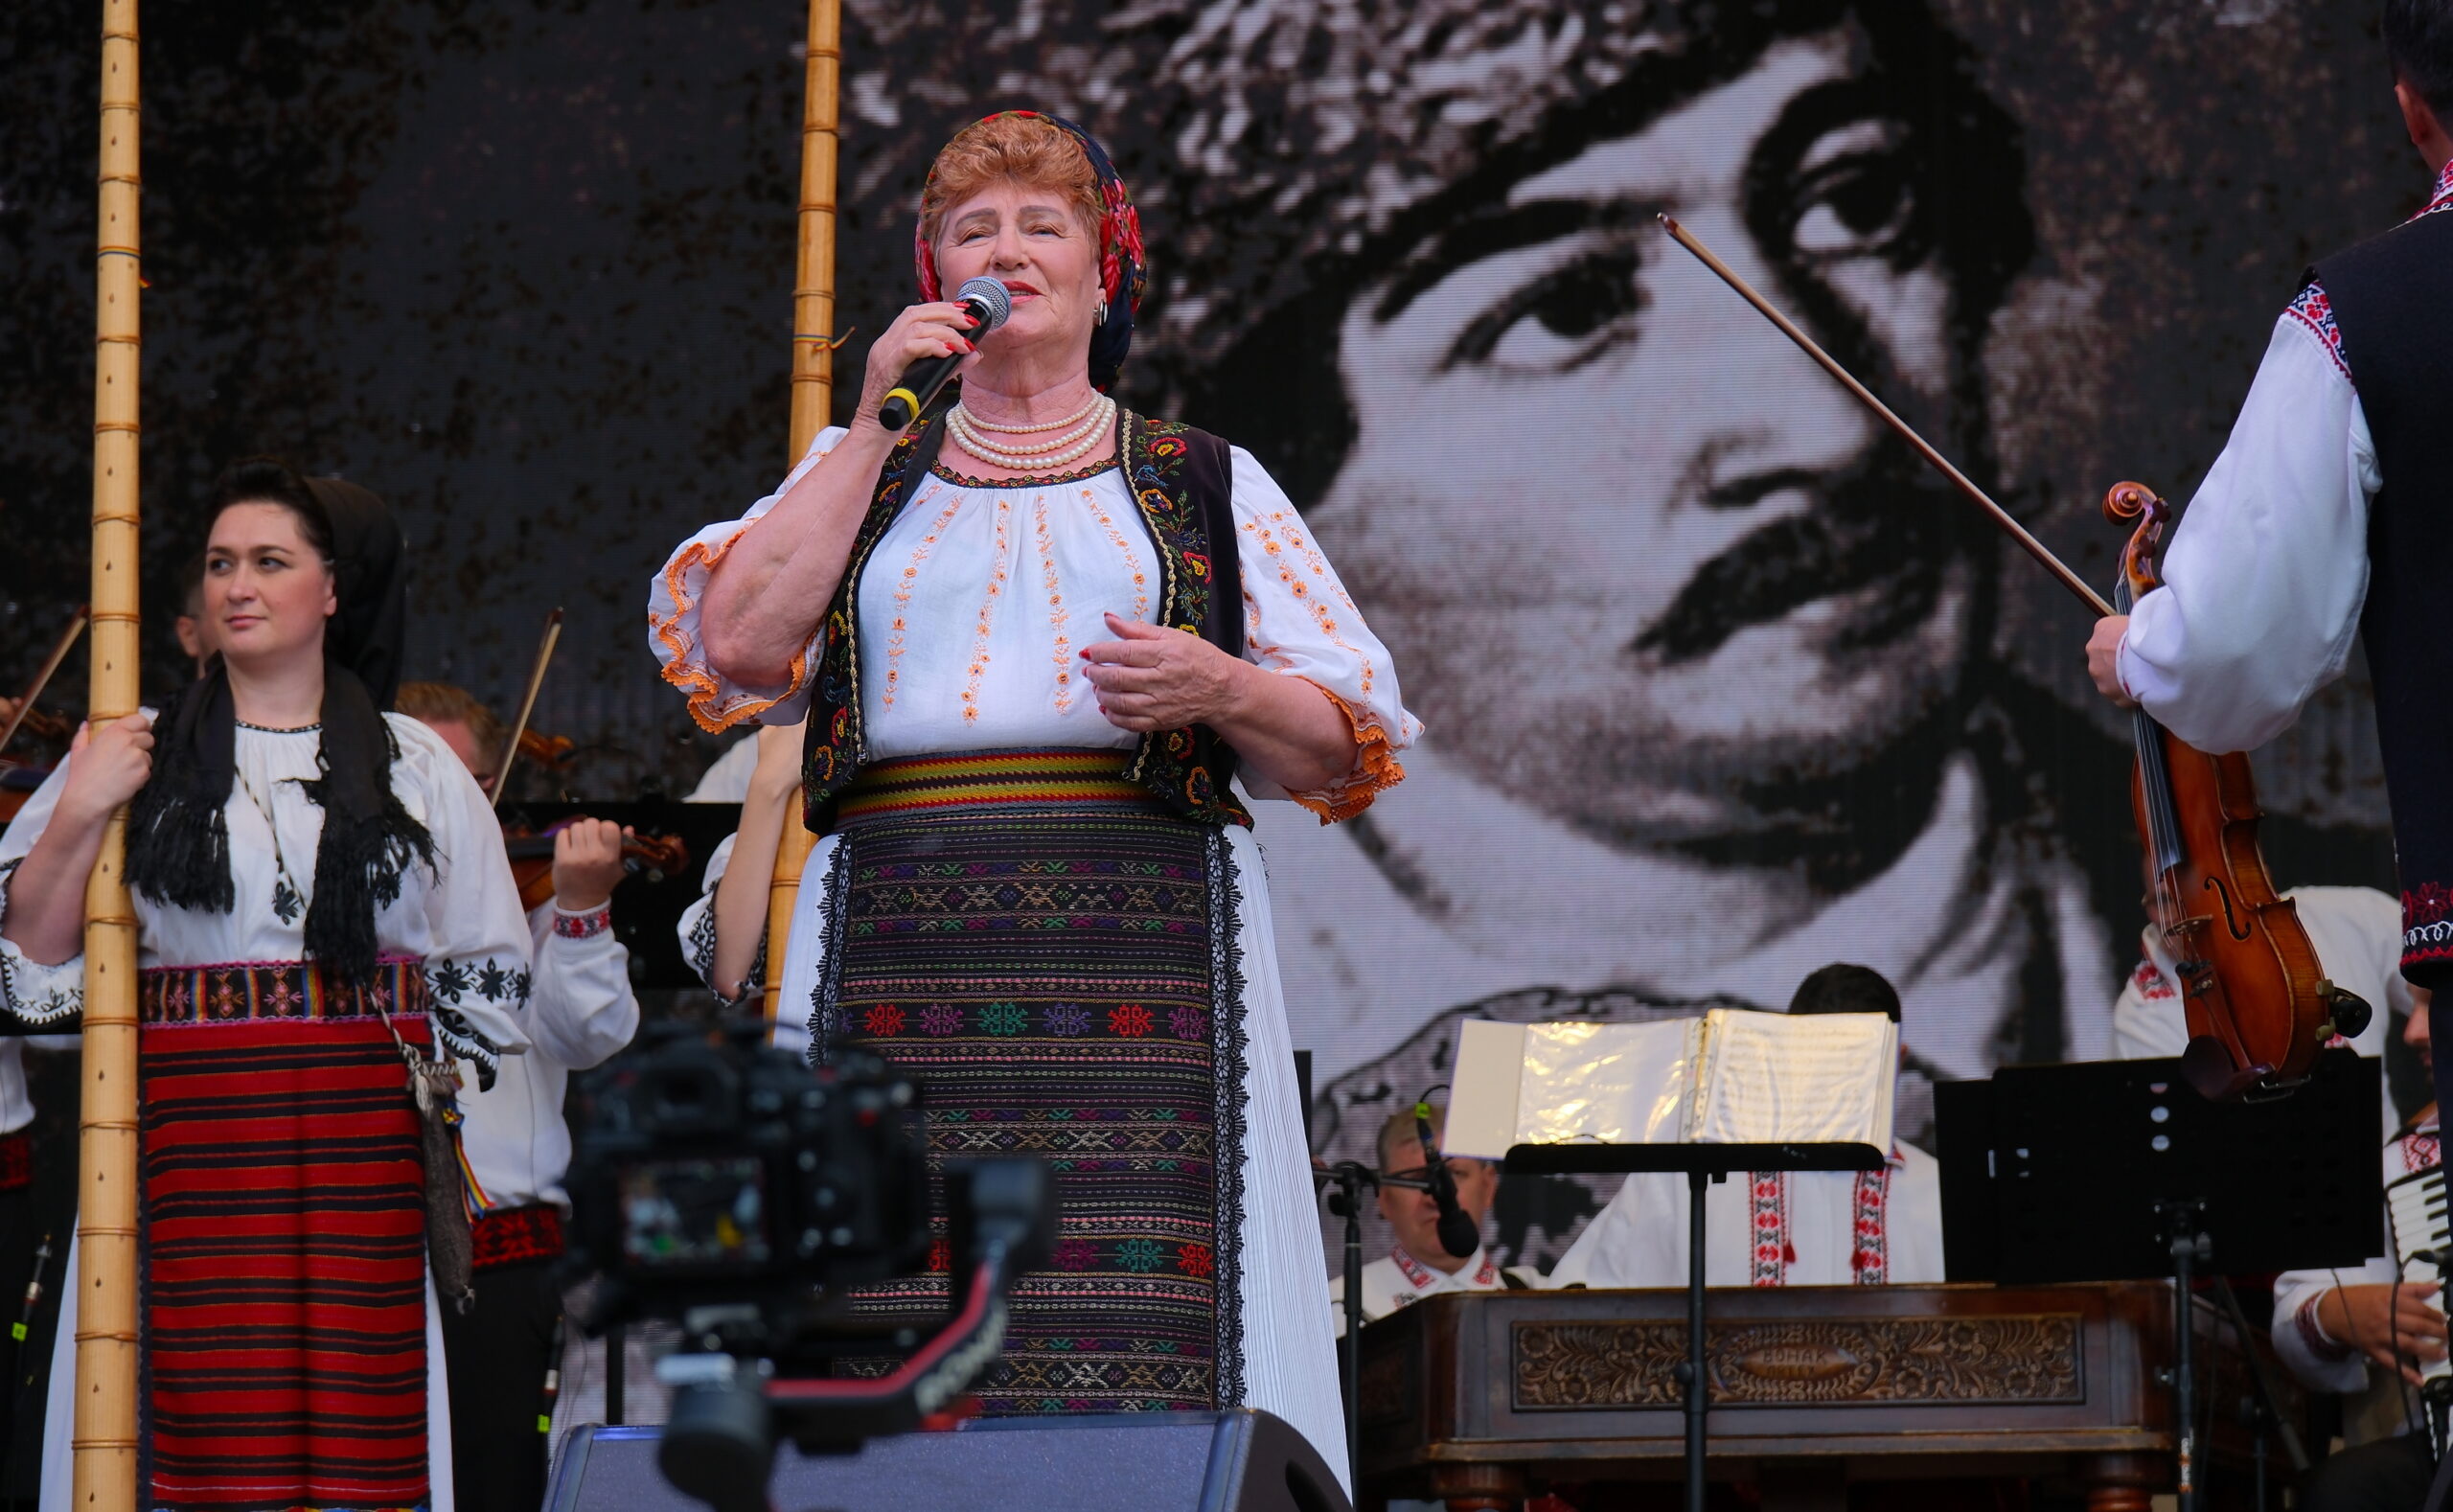 Comemorare Avram Iancu, la Oradea. Foto: Alexandru Niţescu